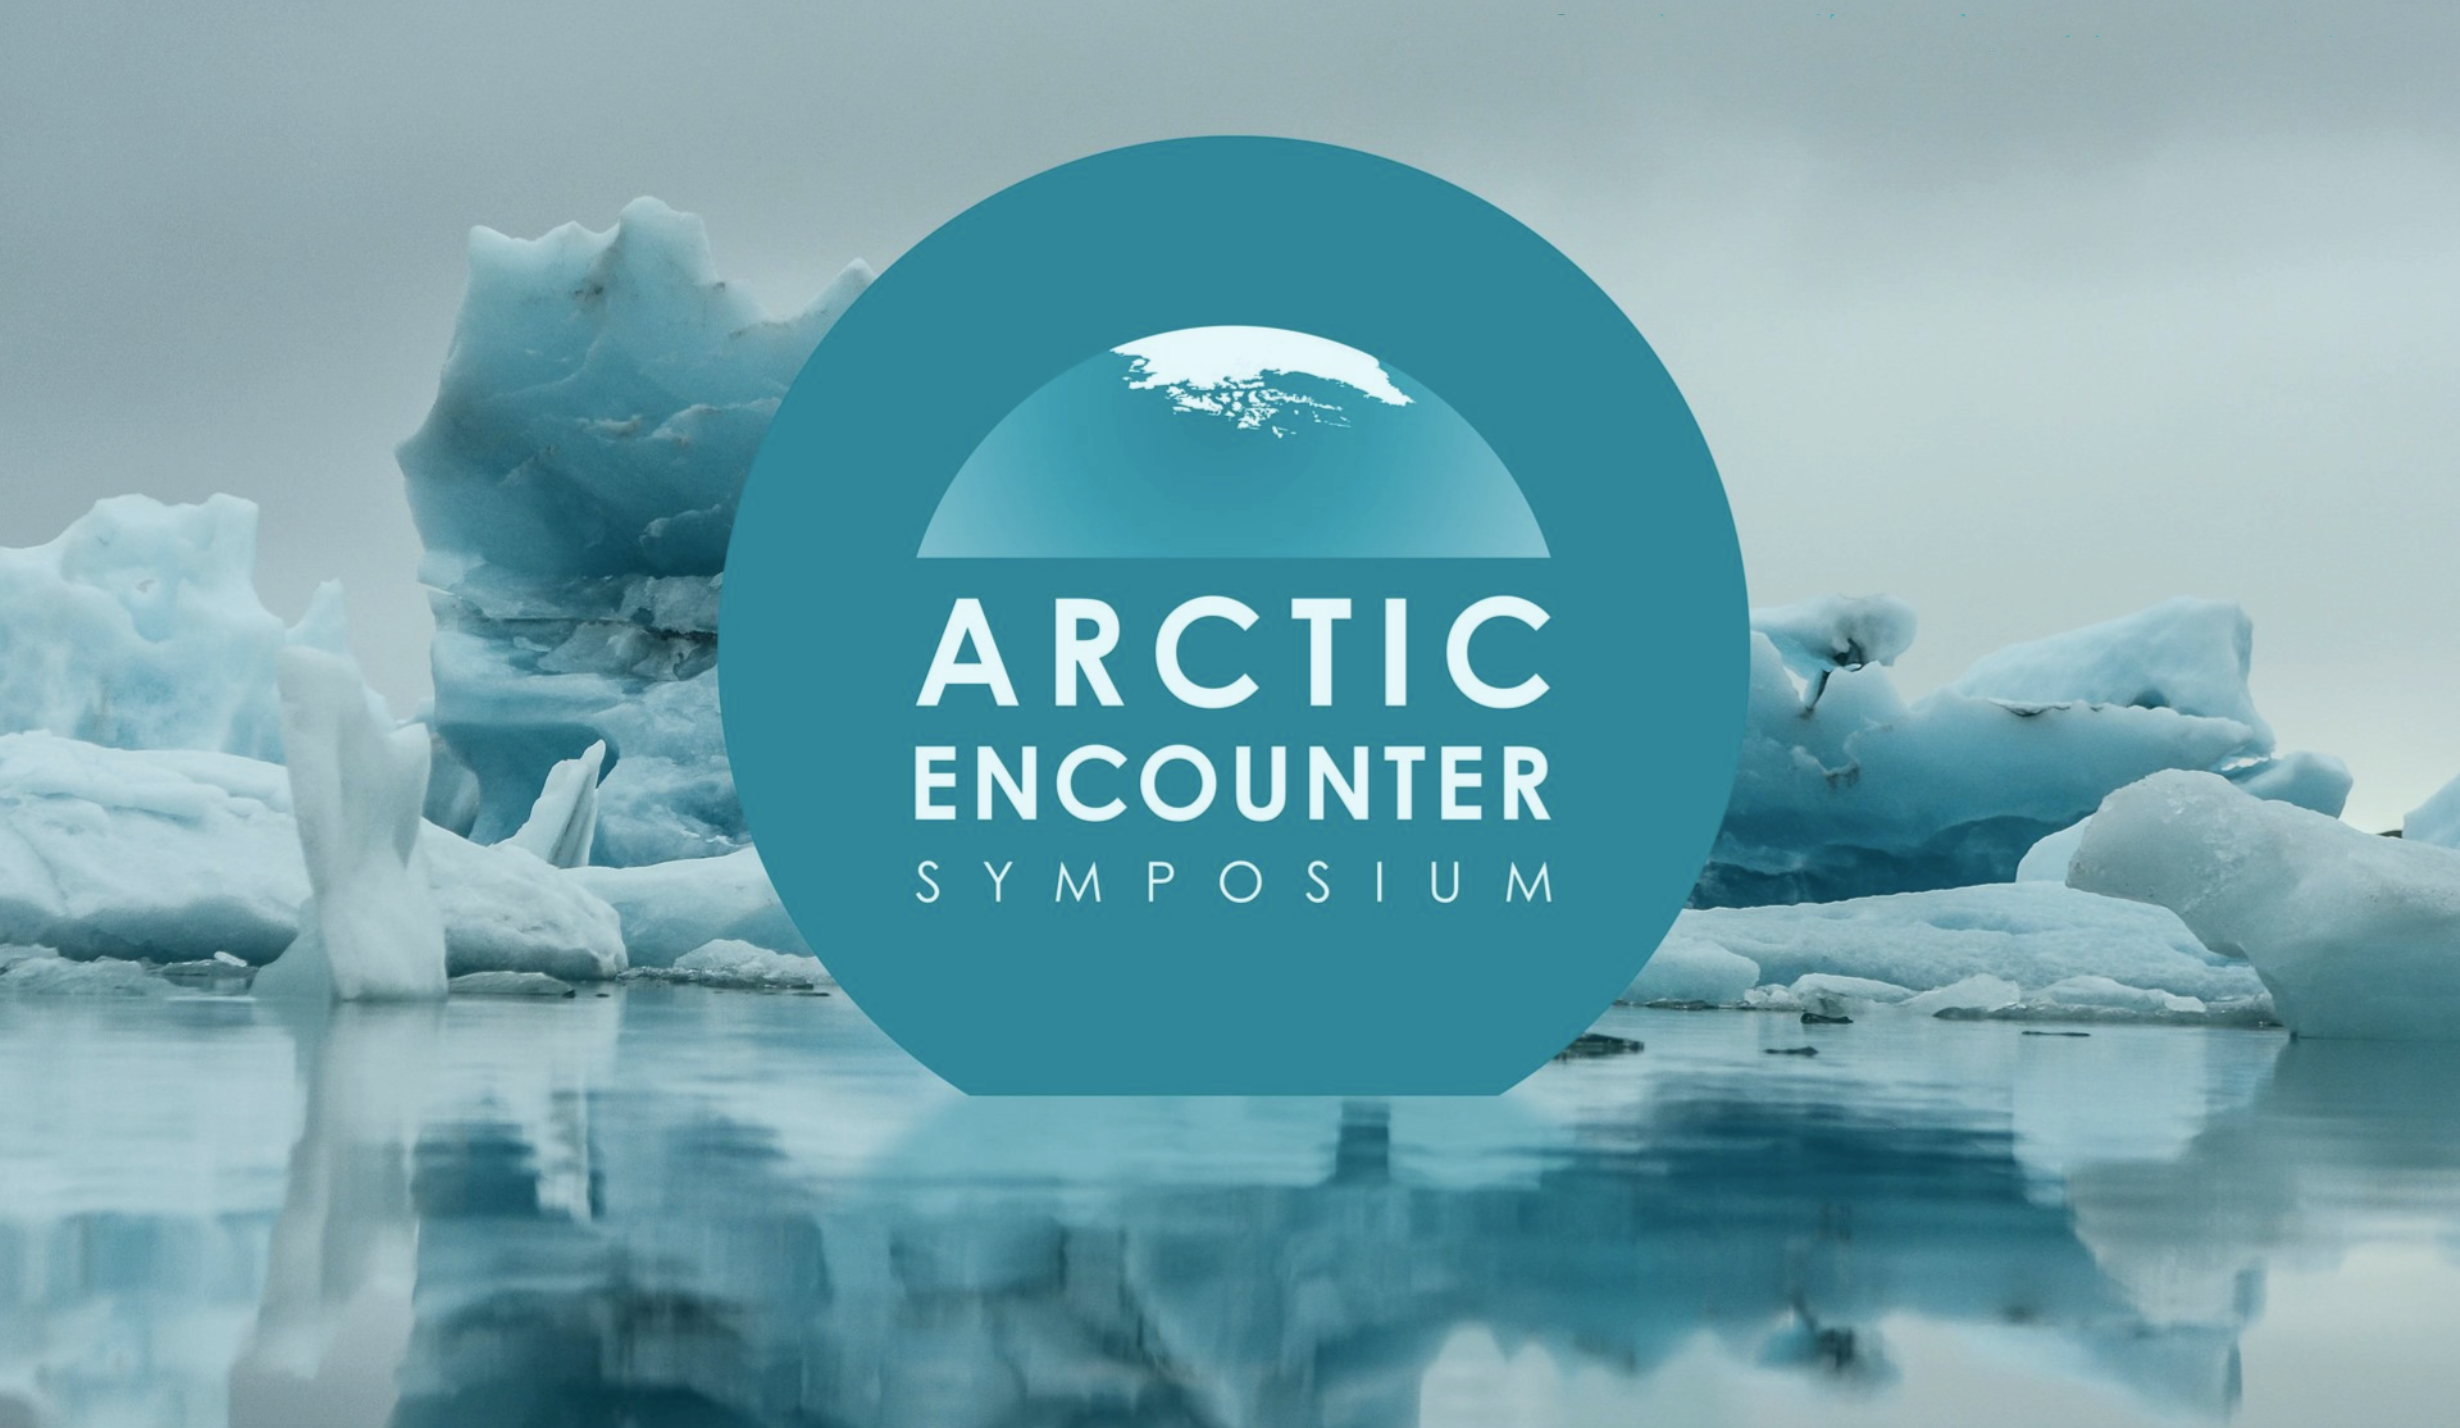 Arctic Encounter Symposium logo on an iceberg background